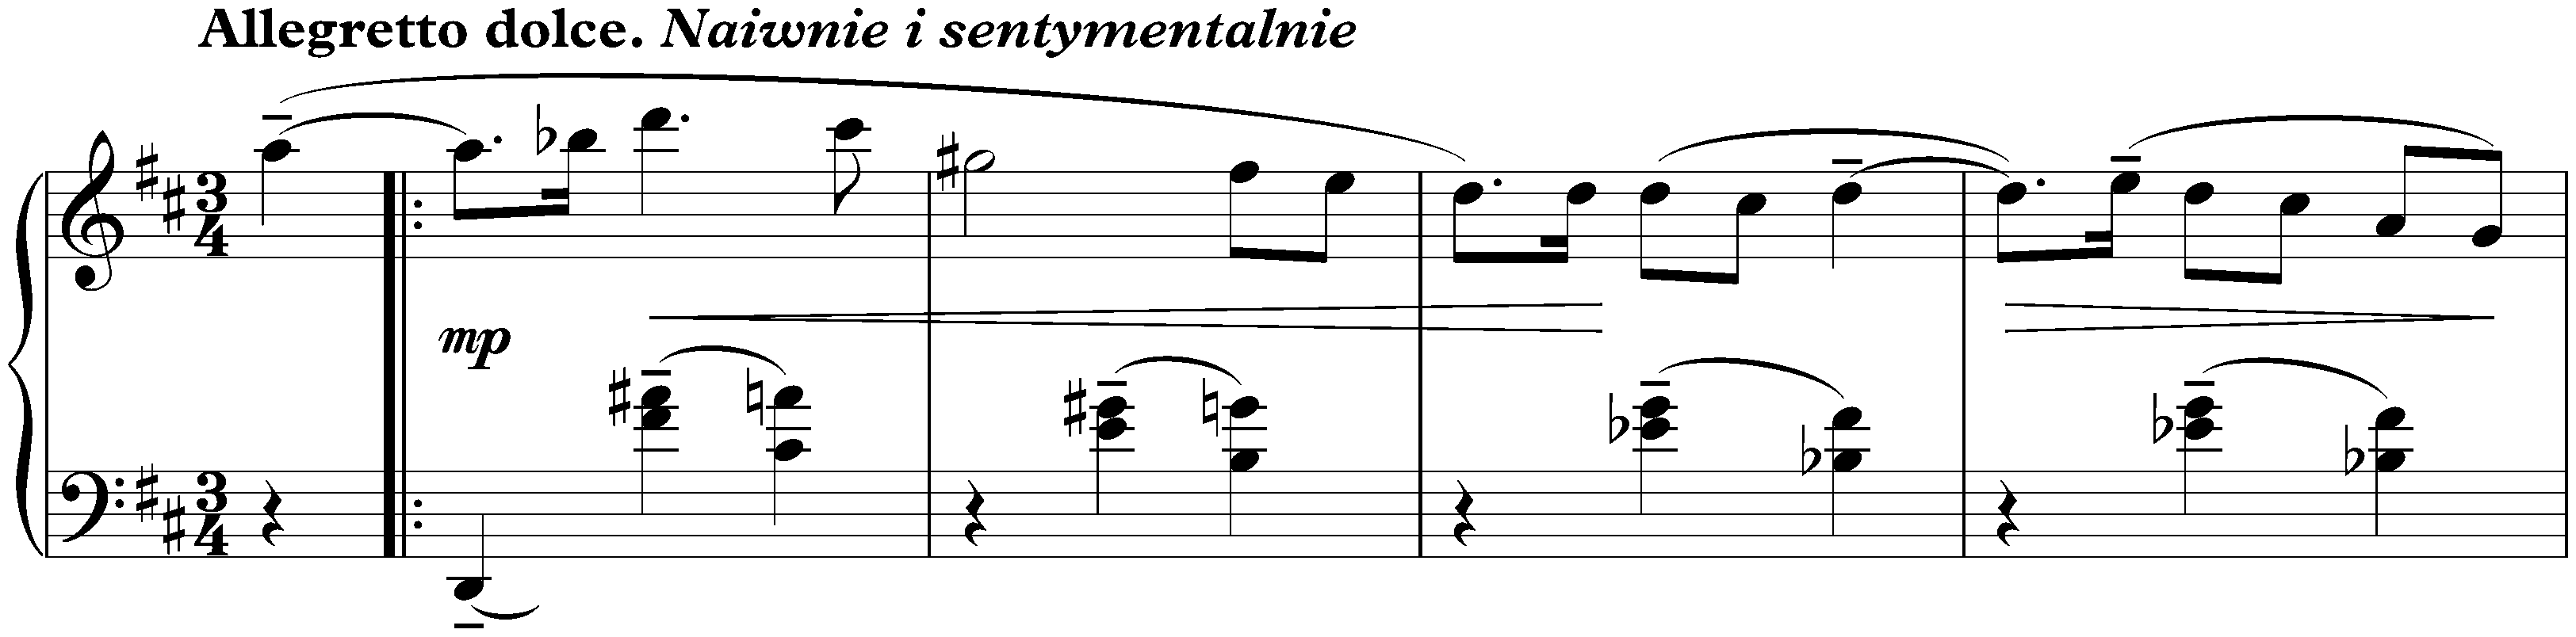 Twenty Mazurkas, op. 50; 15. Allegretto dolce